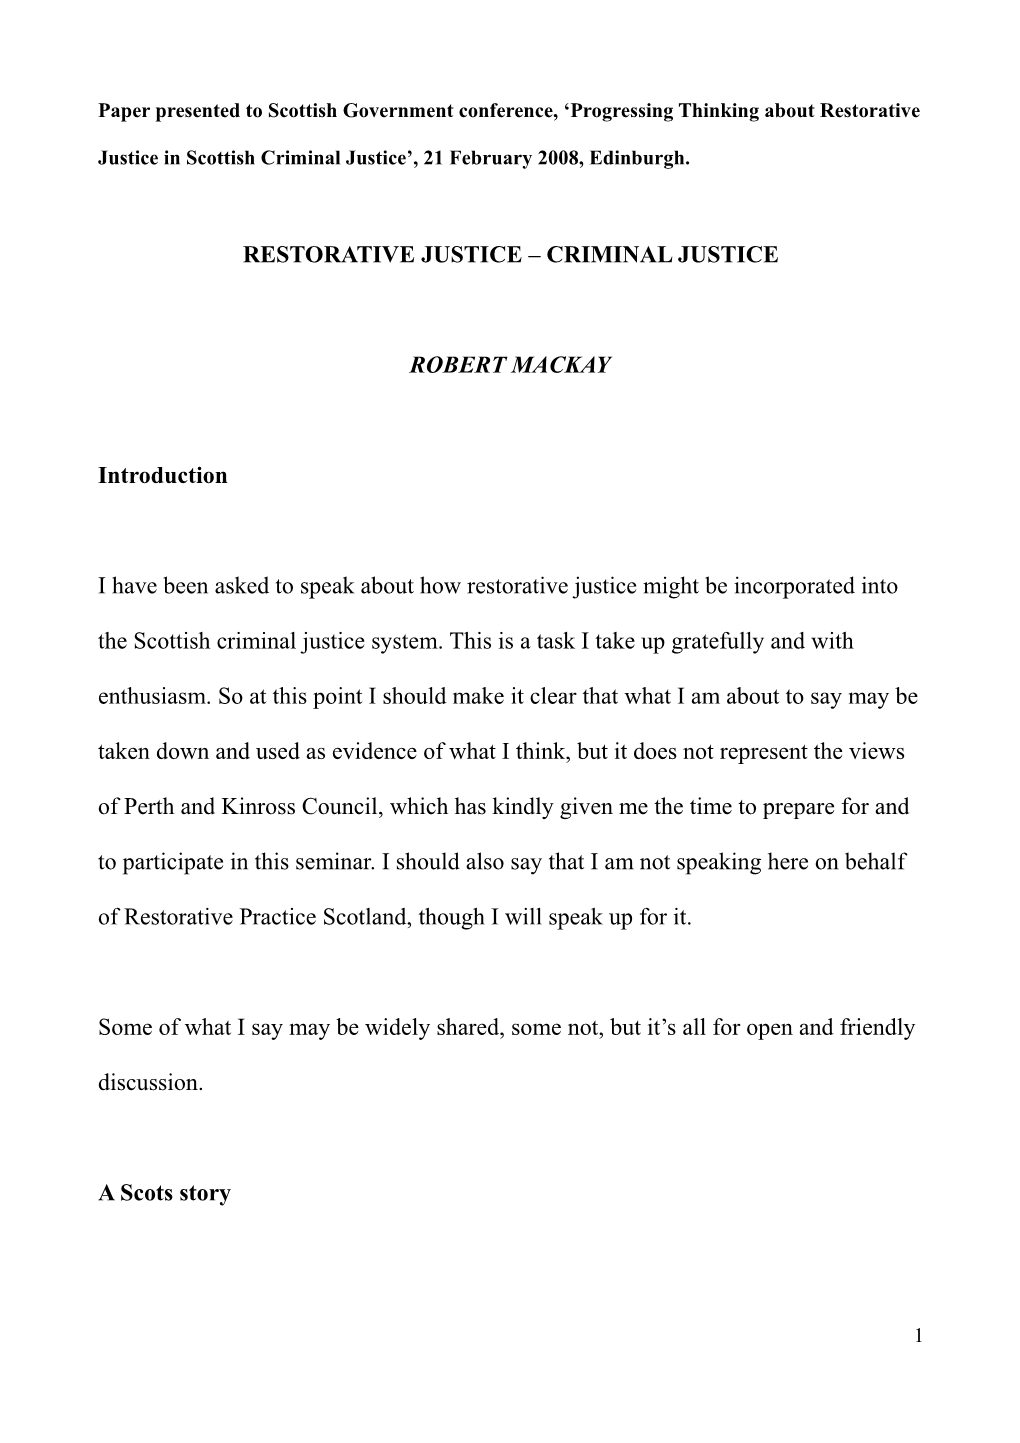 Restorative Justice – Criminal Justice